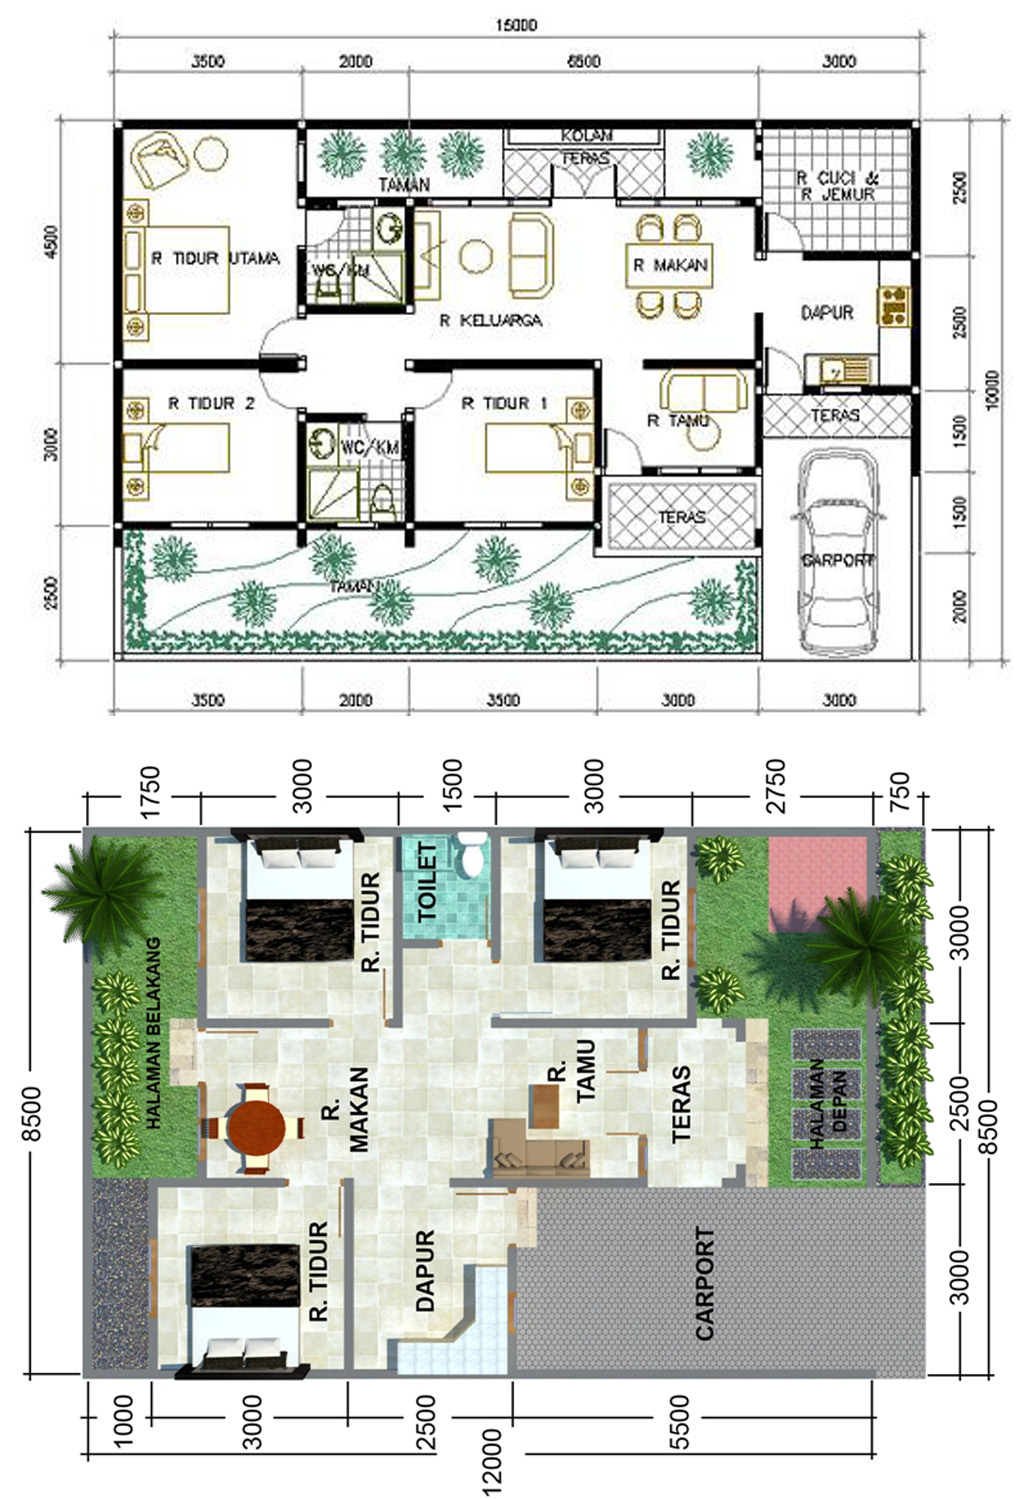 64 Desain Rumah Minimalis 3 Kamar | Desain Rumah Minimalis ...